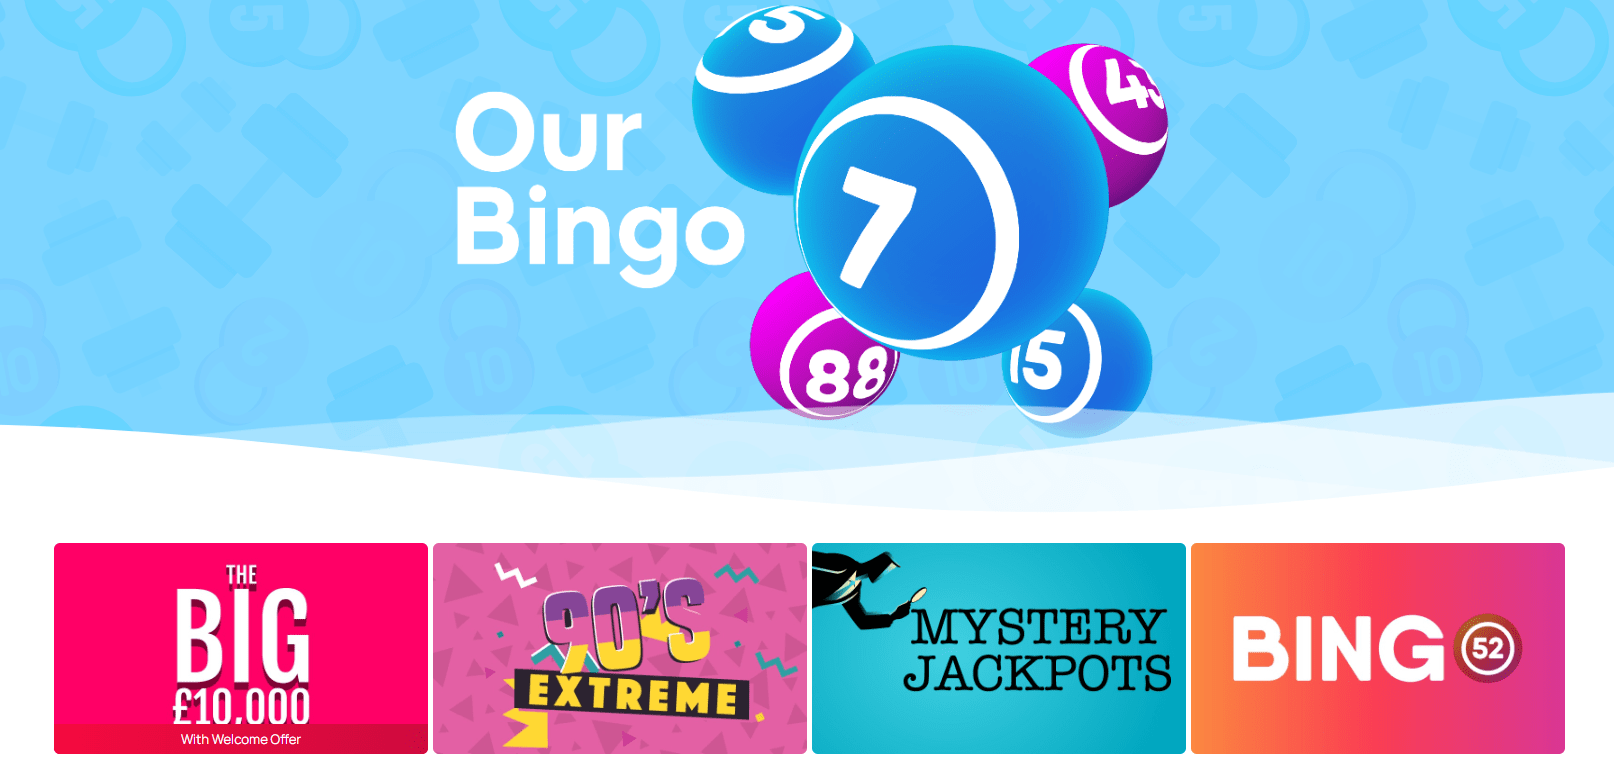 hunky bingo bingo games